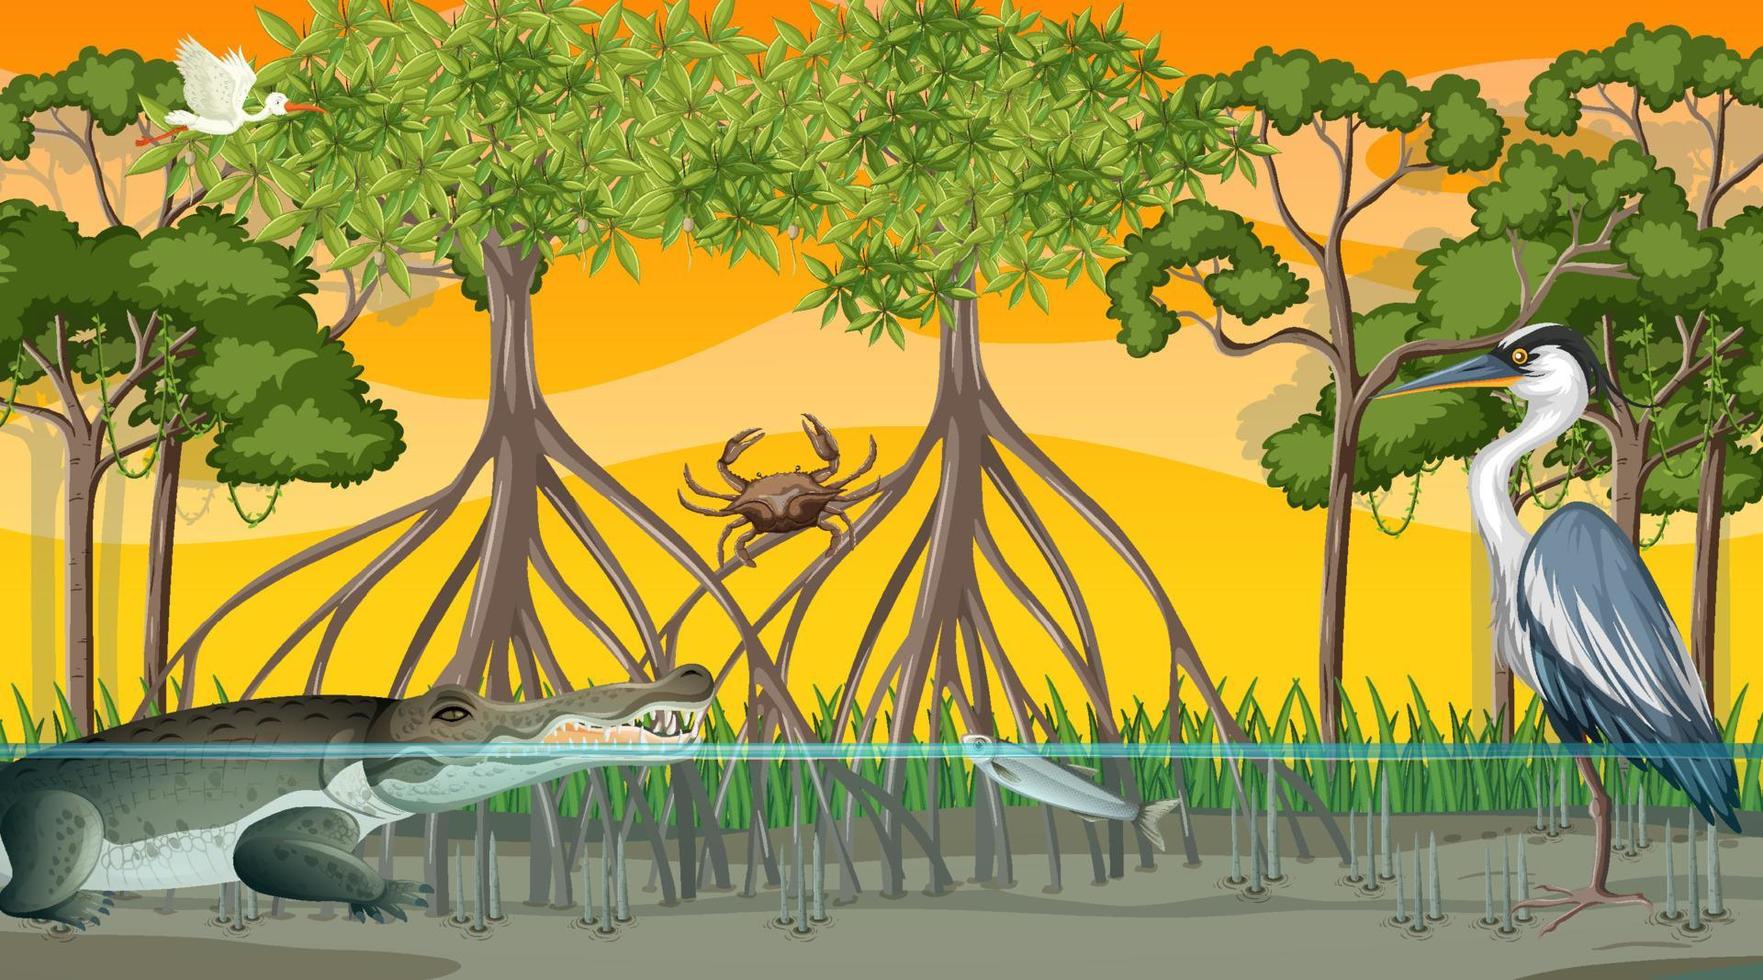 les animaux vivent dans la forêt de mangrove au coucher du soleil vecteur